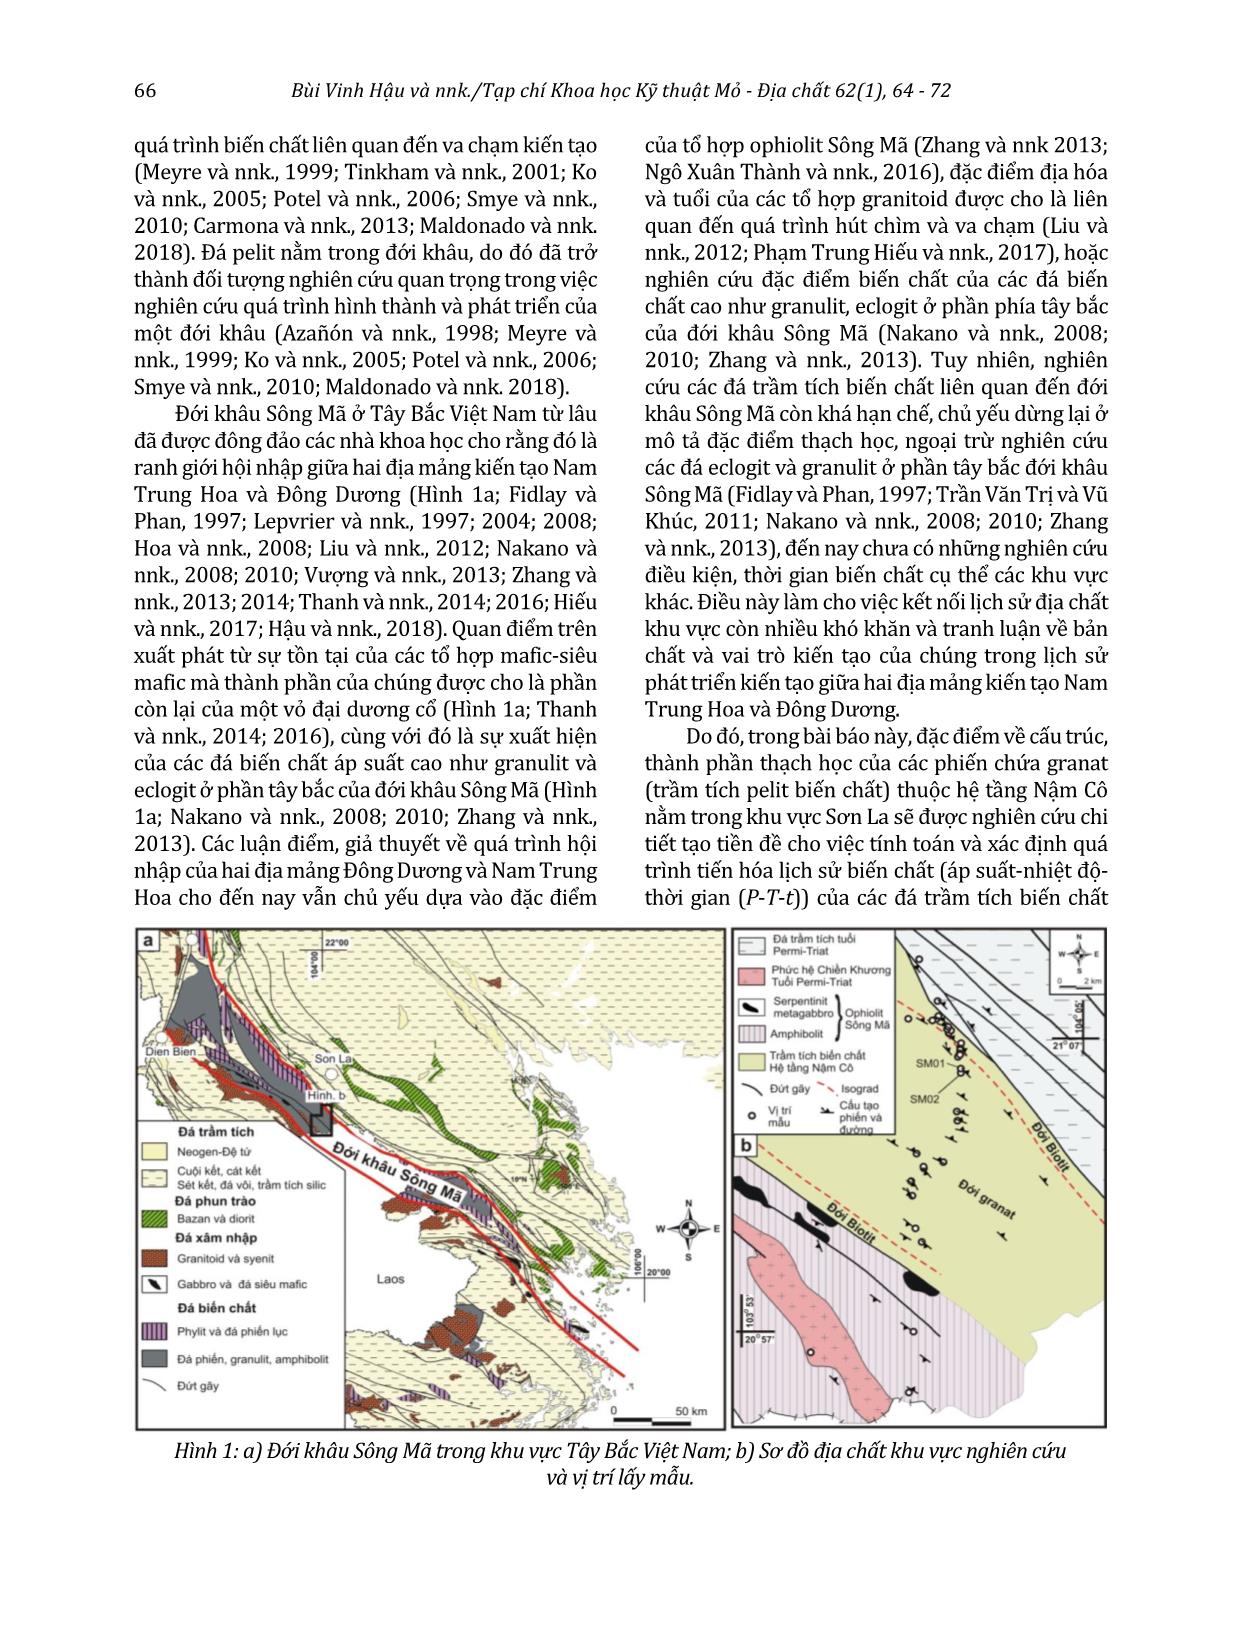 Đặc điểm thành phần thạch học và cấu trúc các đá phiến chứa granat của hệ tầng Nậm Cô, khu vực Sơn La, đới khâu Sông Mã, Tây Bắc Việt Nam trang 3